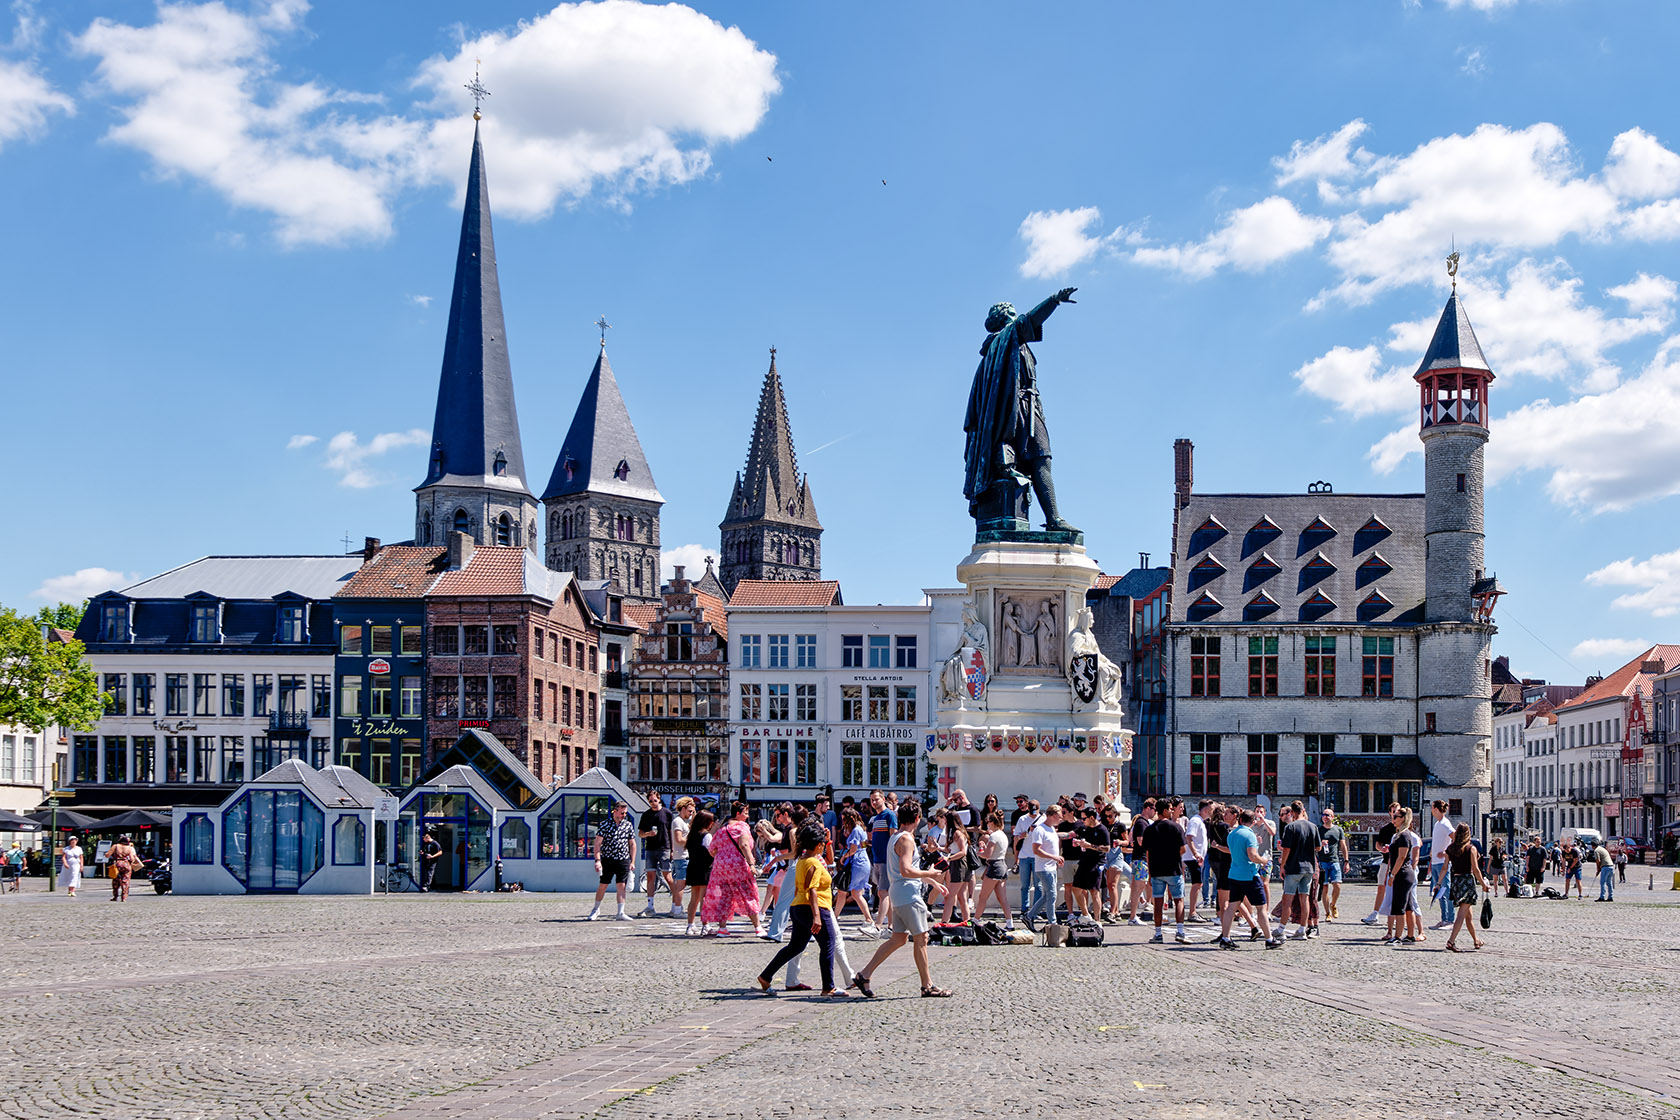 The 'Vrijdagsmarkt' (Friday Market) with its statue of Jacob van Artevelde